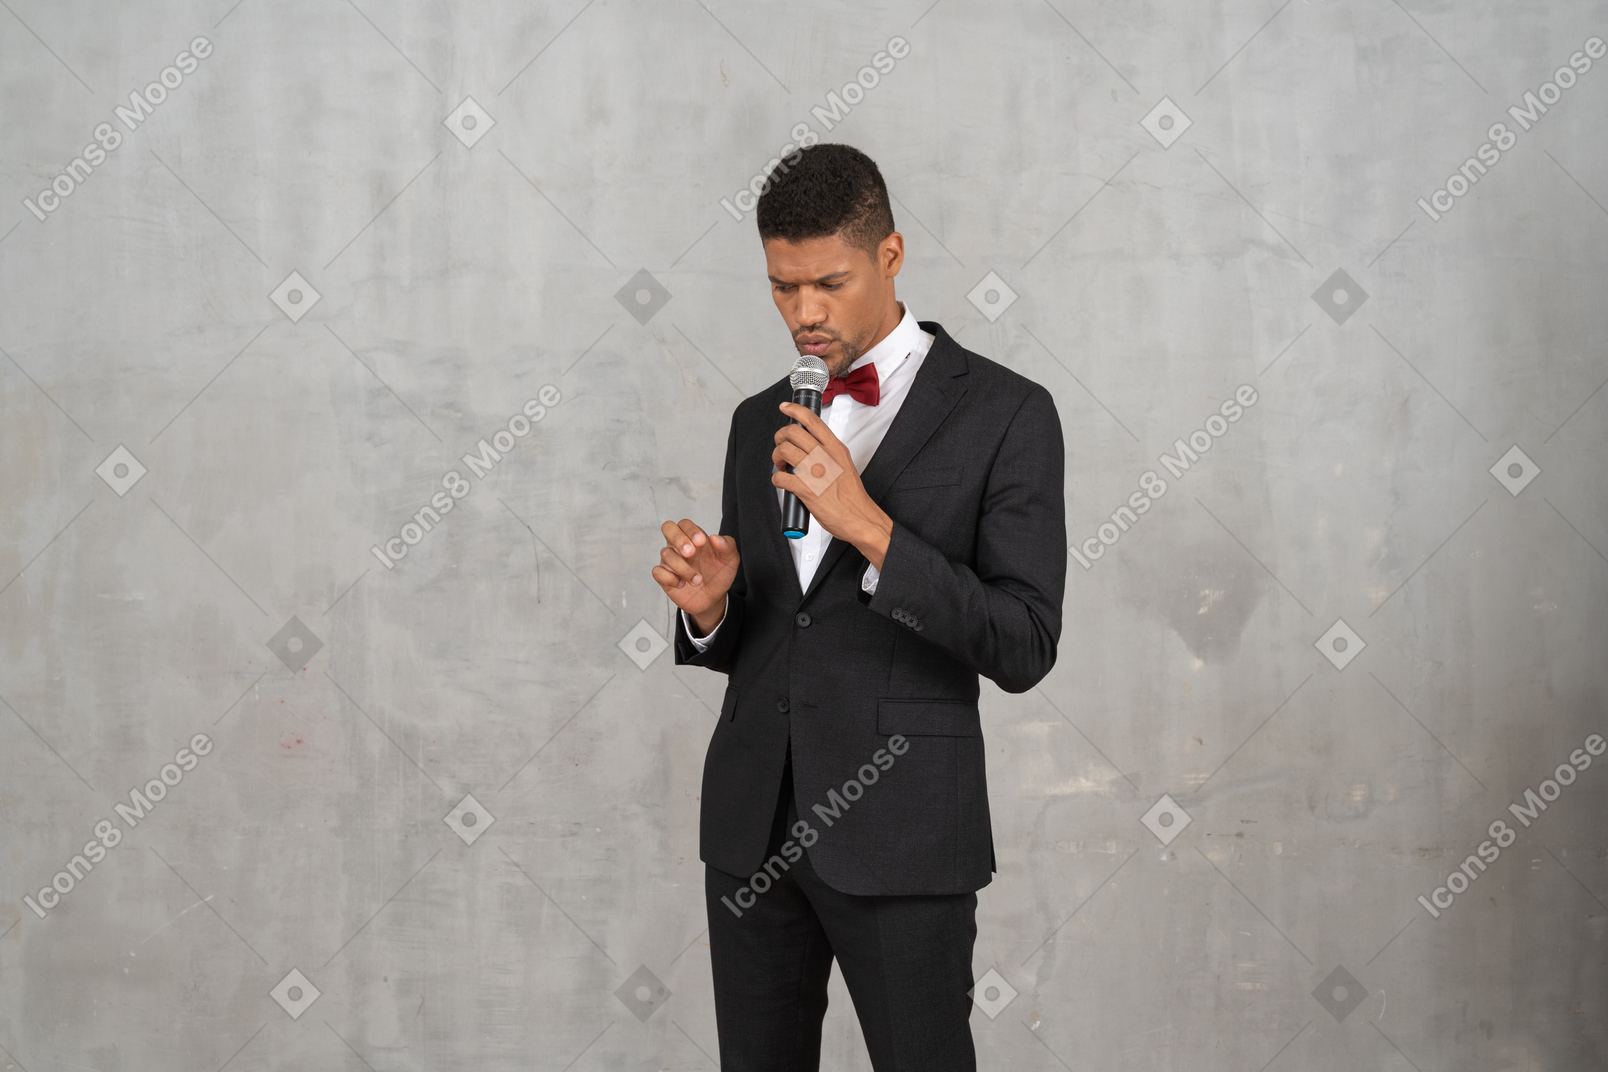 Hombre sombrío en traje negro sosteniendo un micrófono